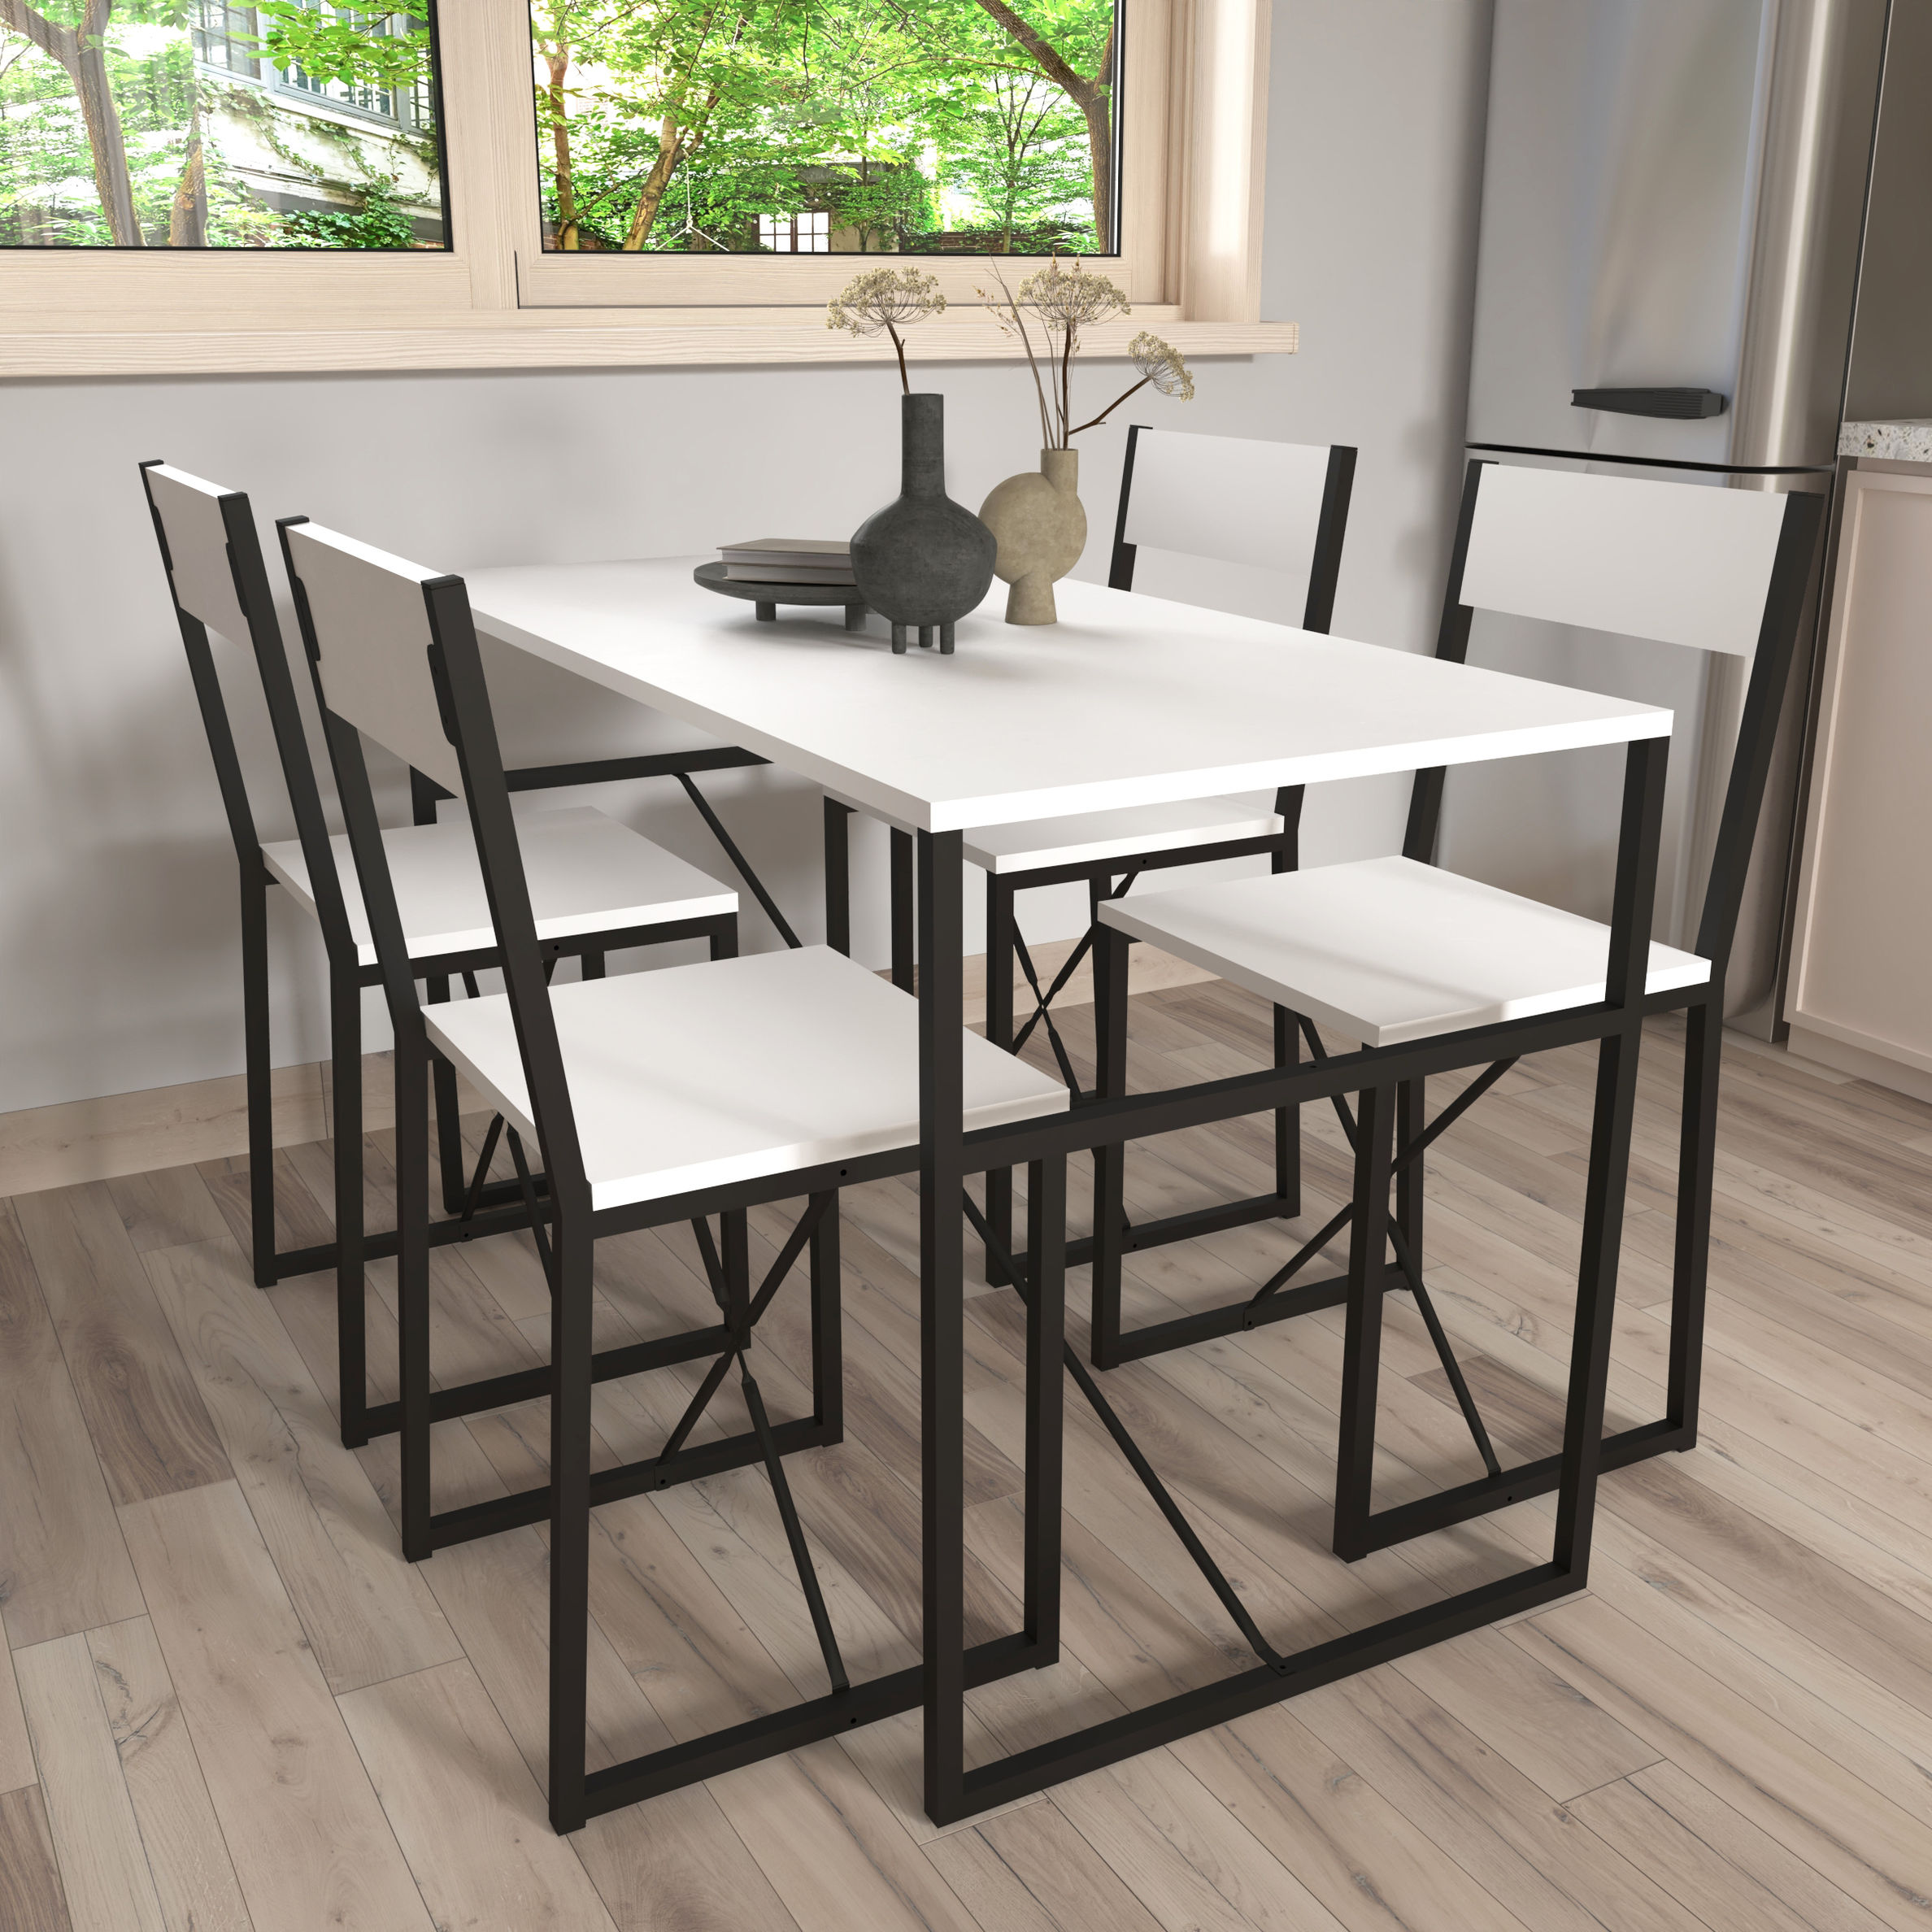 VCM 4-tlg. Holz Metall Essgruppe Küchentisch Esstisch Set Tischgruppe Tisch  Stühle Insasi L Farbe: Weiß | Weltbild.de